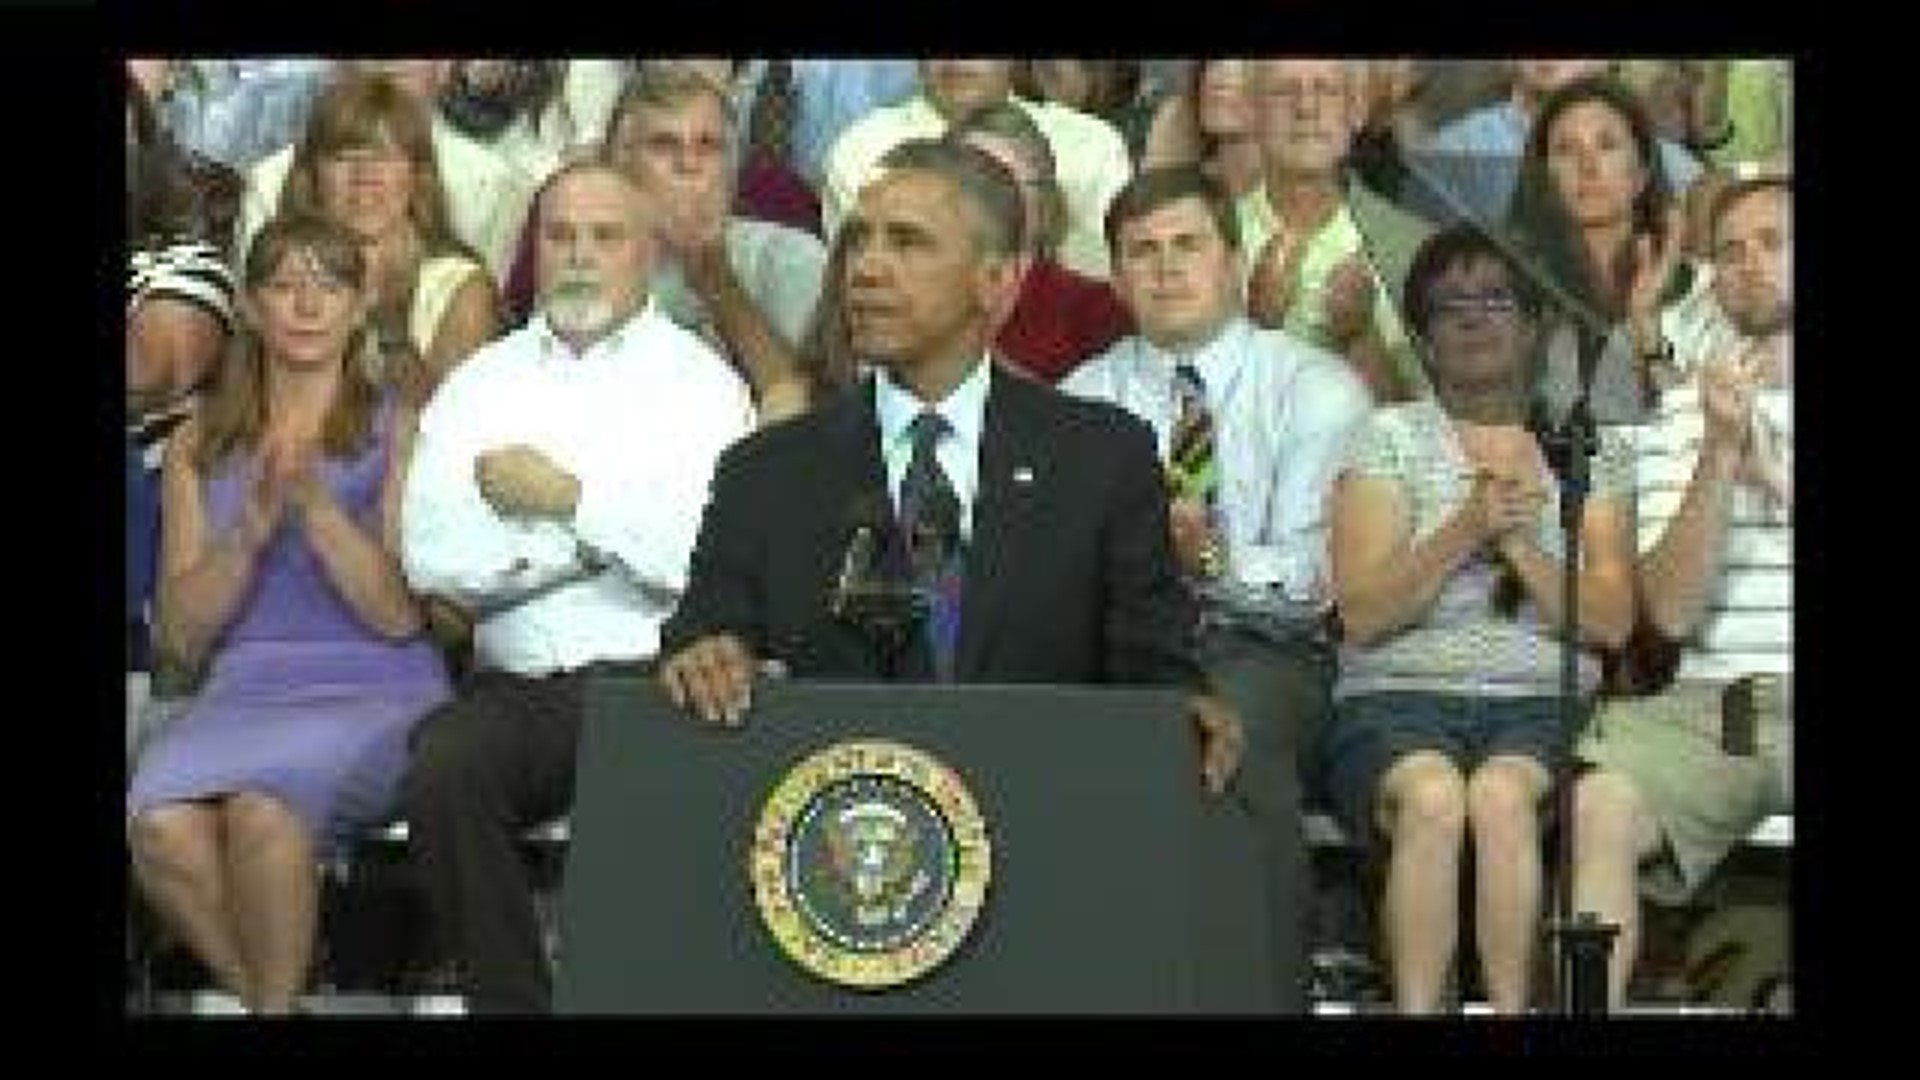 President Obama speaks in Galesburg - clip 5 of 7